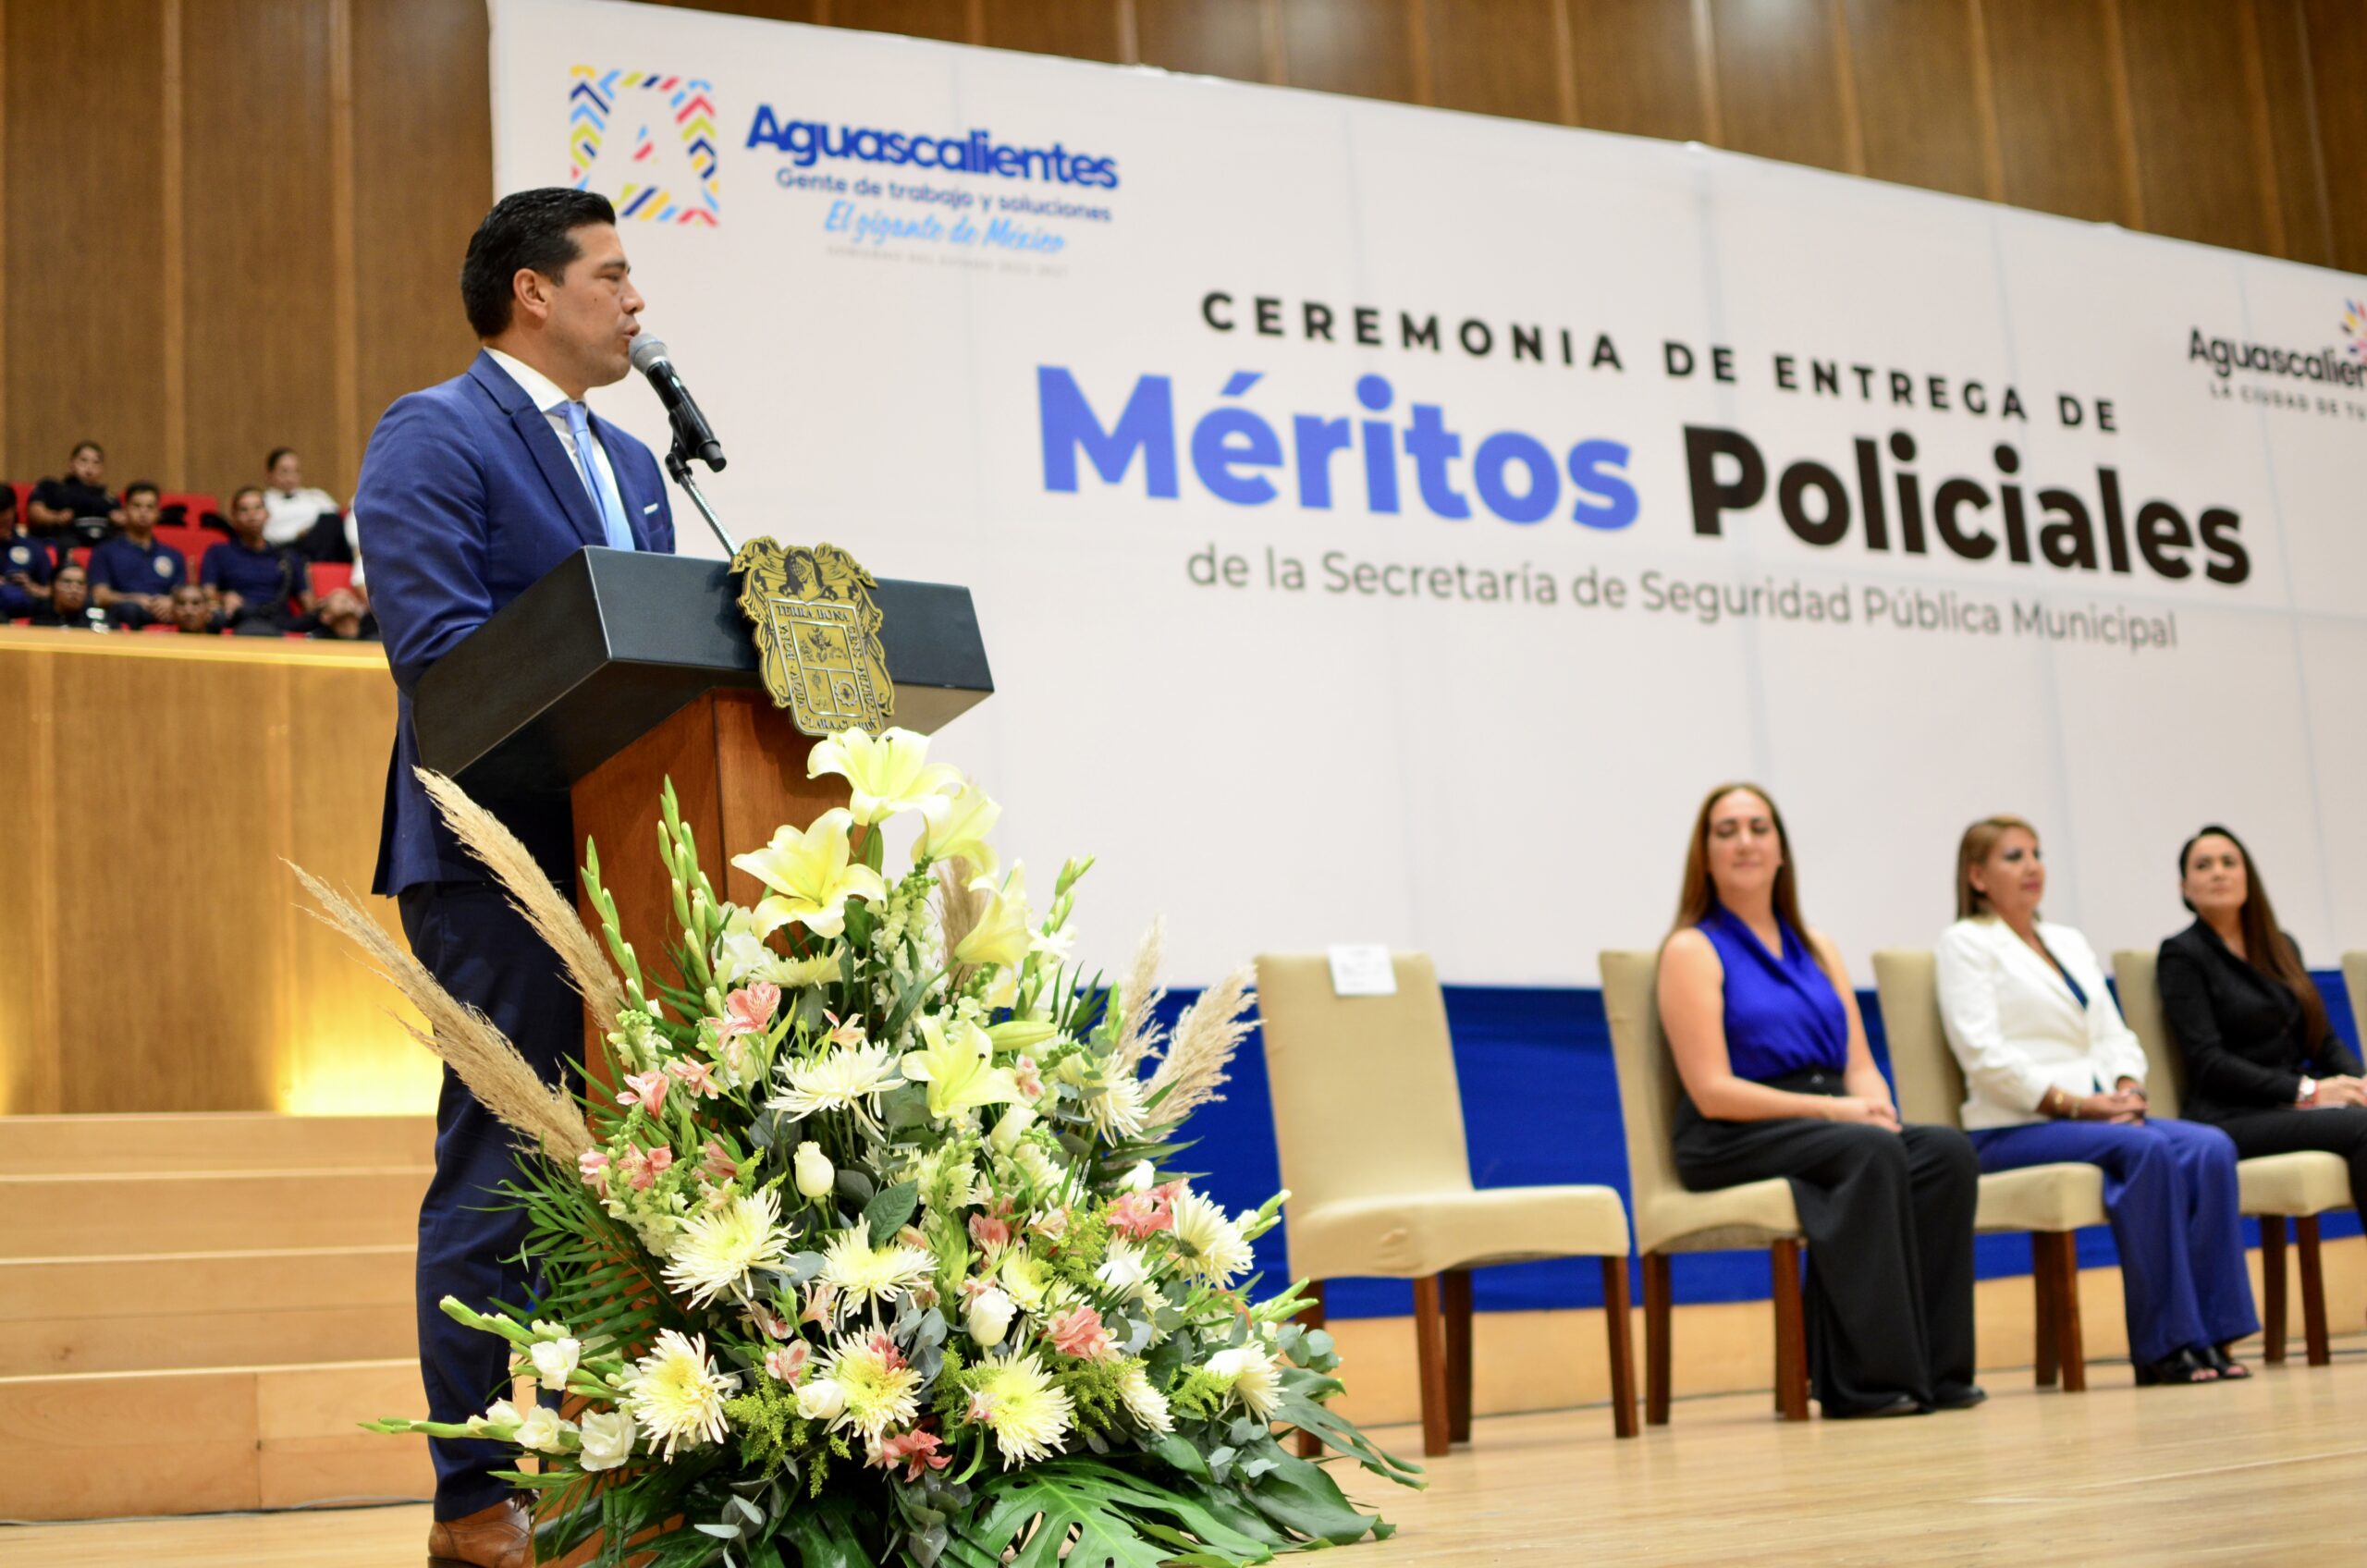 ENTREGAN TERE JIMÉNEZ Y LEO MONTAÑEZ RECONOCIMIENTOS AL MÉRITO A POLICÍAS DEL MUNICIPIO DE AGUASCALIENTES